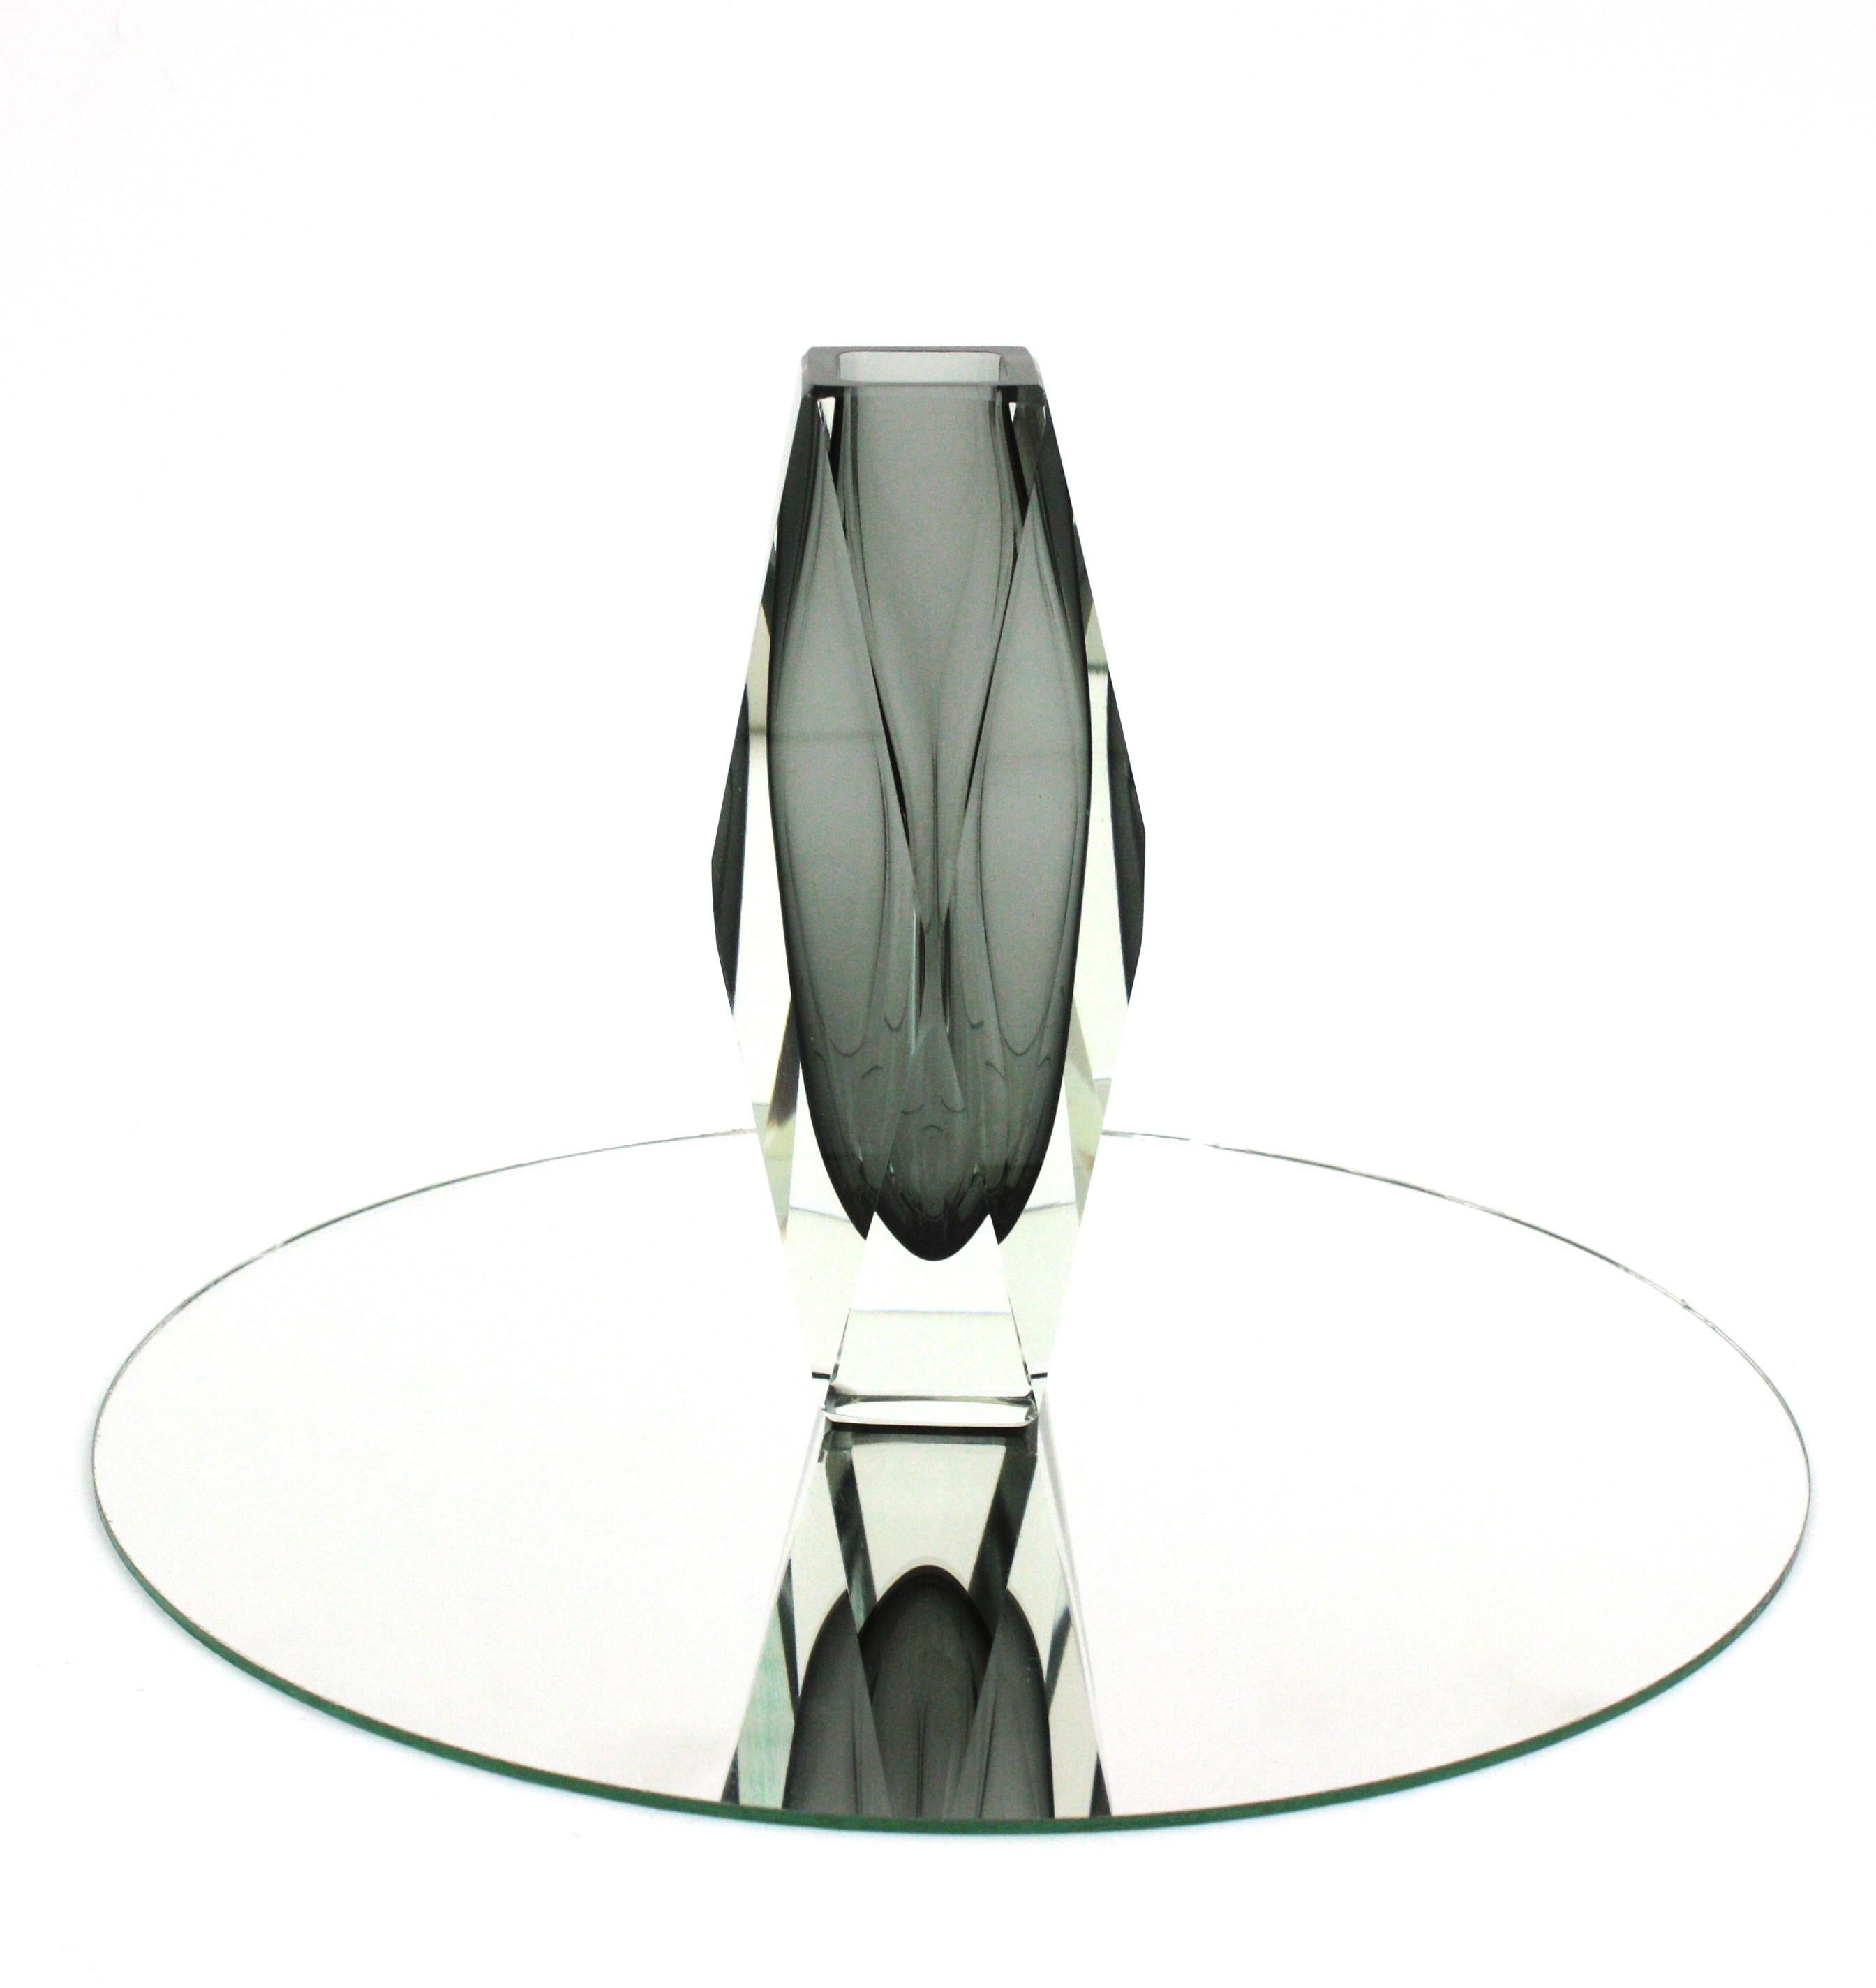 Ausgezeichnete Vase von Sommerso mit facettiertem Glas in Grautönen. Zuschreibung an Mandruzzato, Italien, 1960er Jahre.
Dunkles und klares graues Glas, das mit der Sommerso-Technik in klares Glas eingelegt wurde.
Ausgezeichneter Zustand. Keine